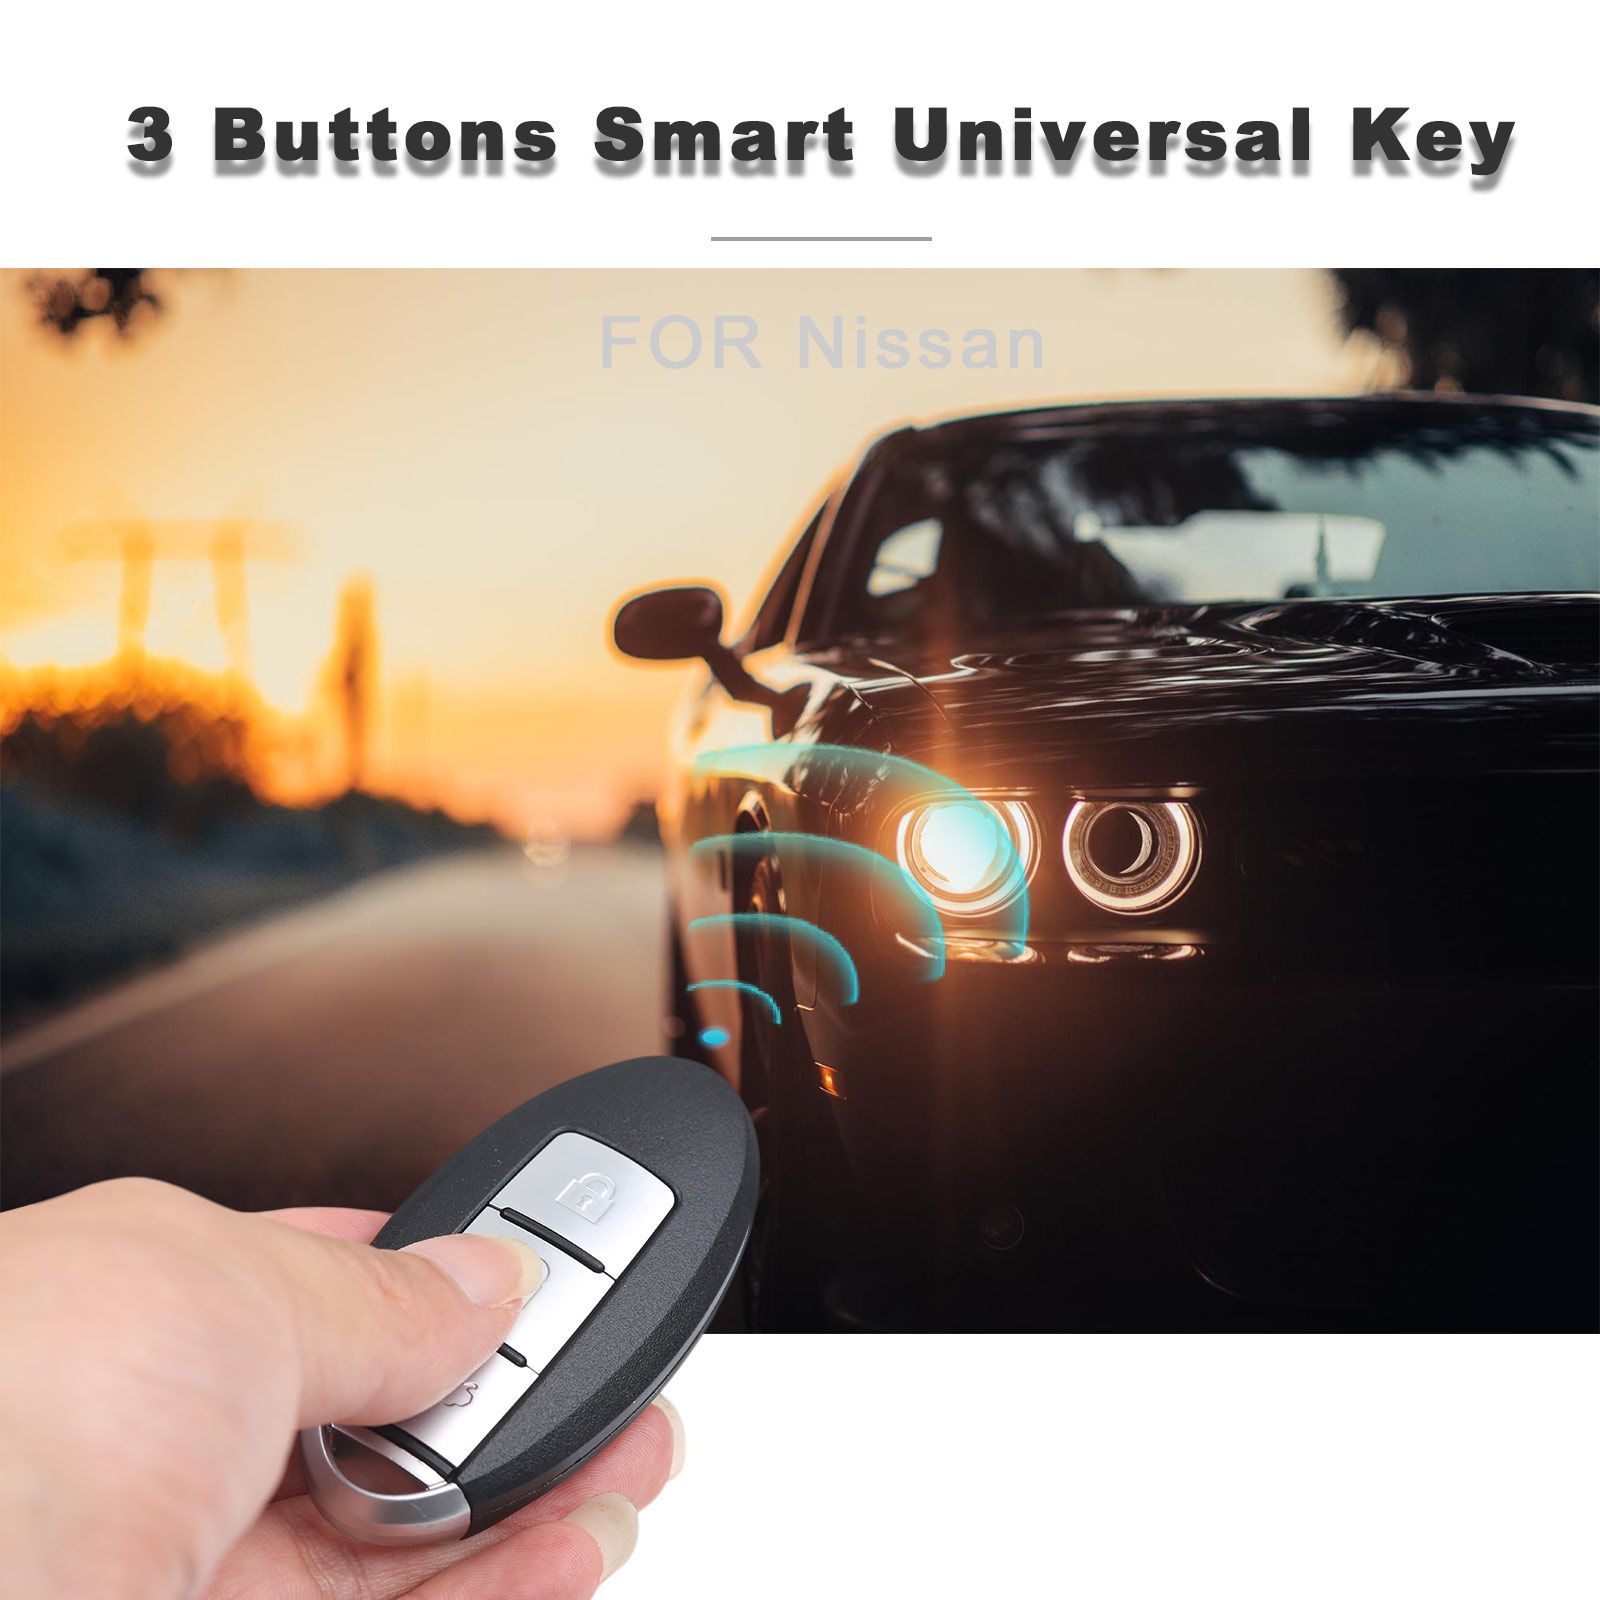 Autel ikeyns004al Nissan 3 botones llave inteligente universal 5 piezas / lote